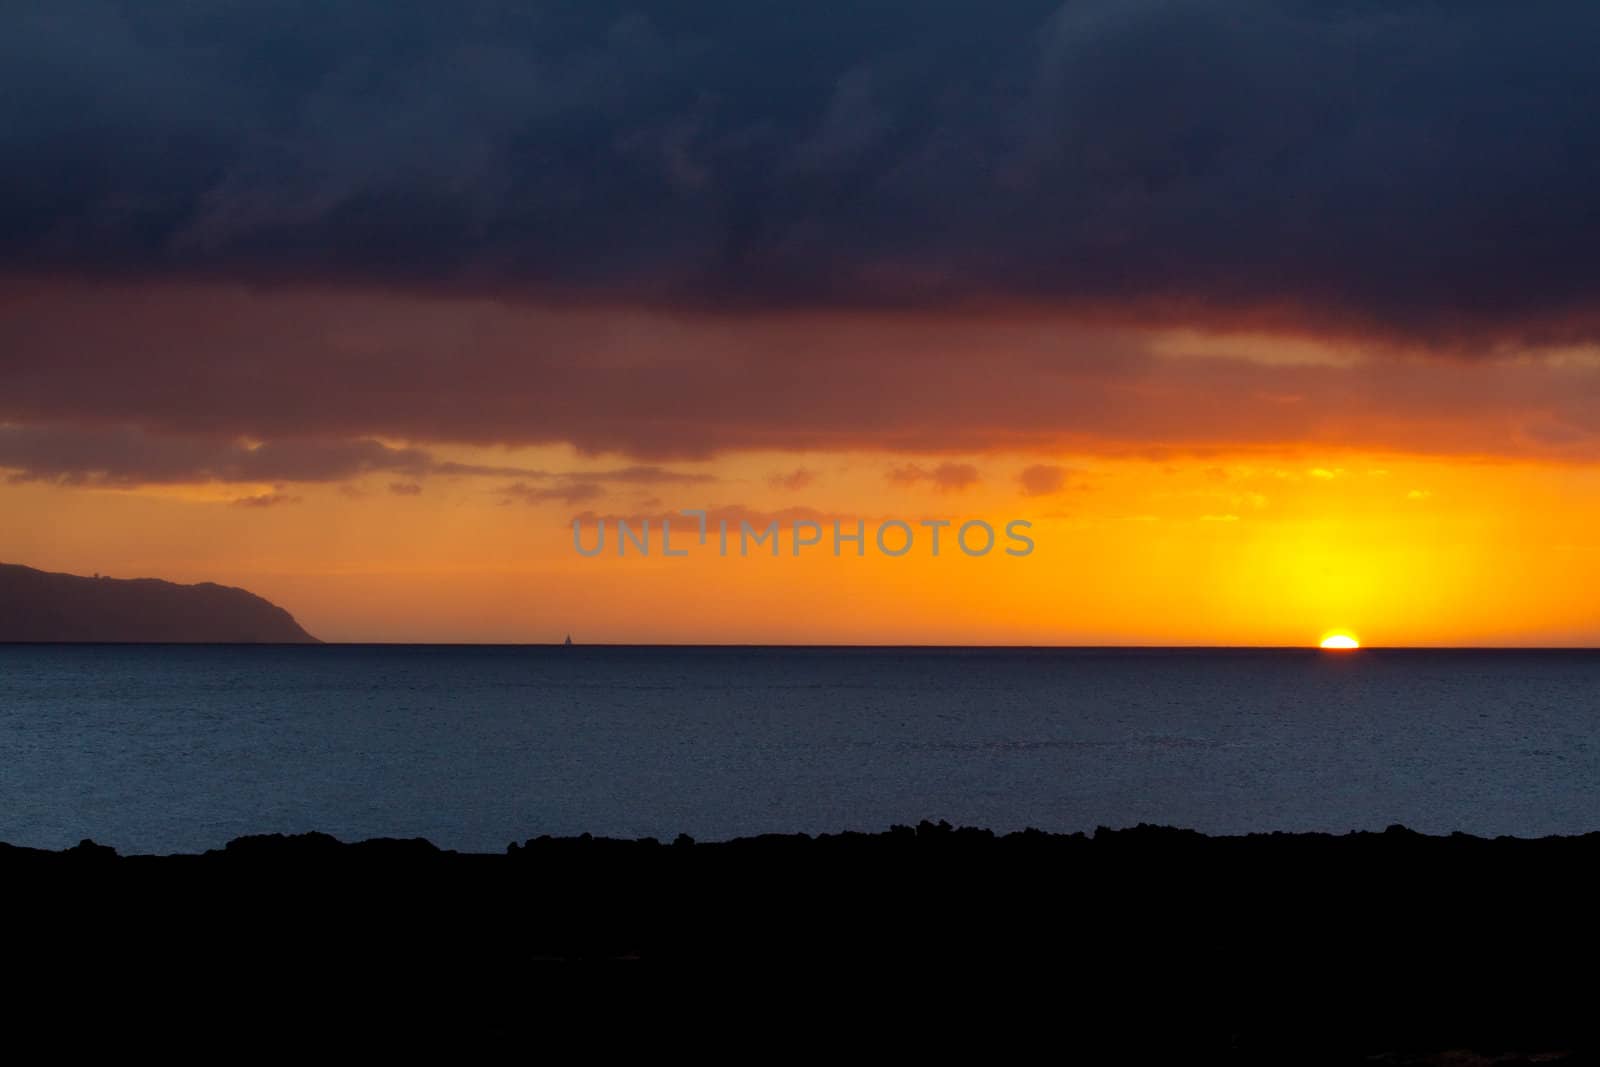 Sailboat Sunset by joshuaraineyphotography